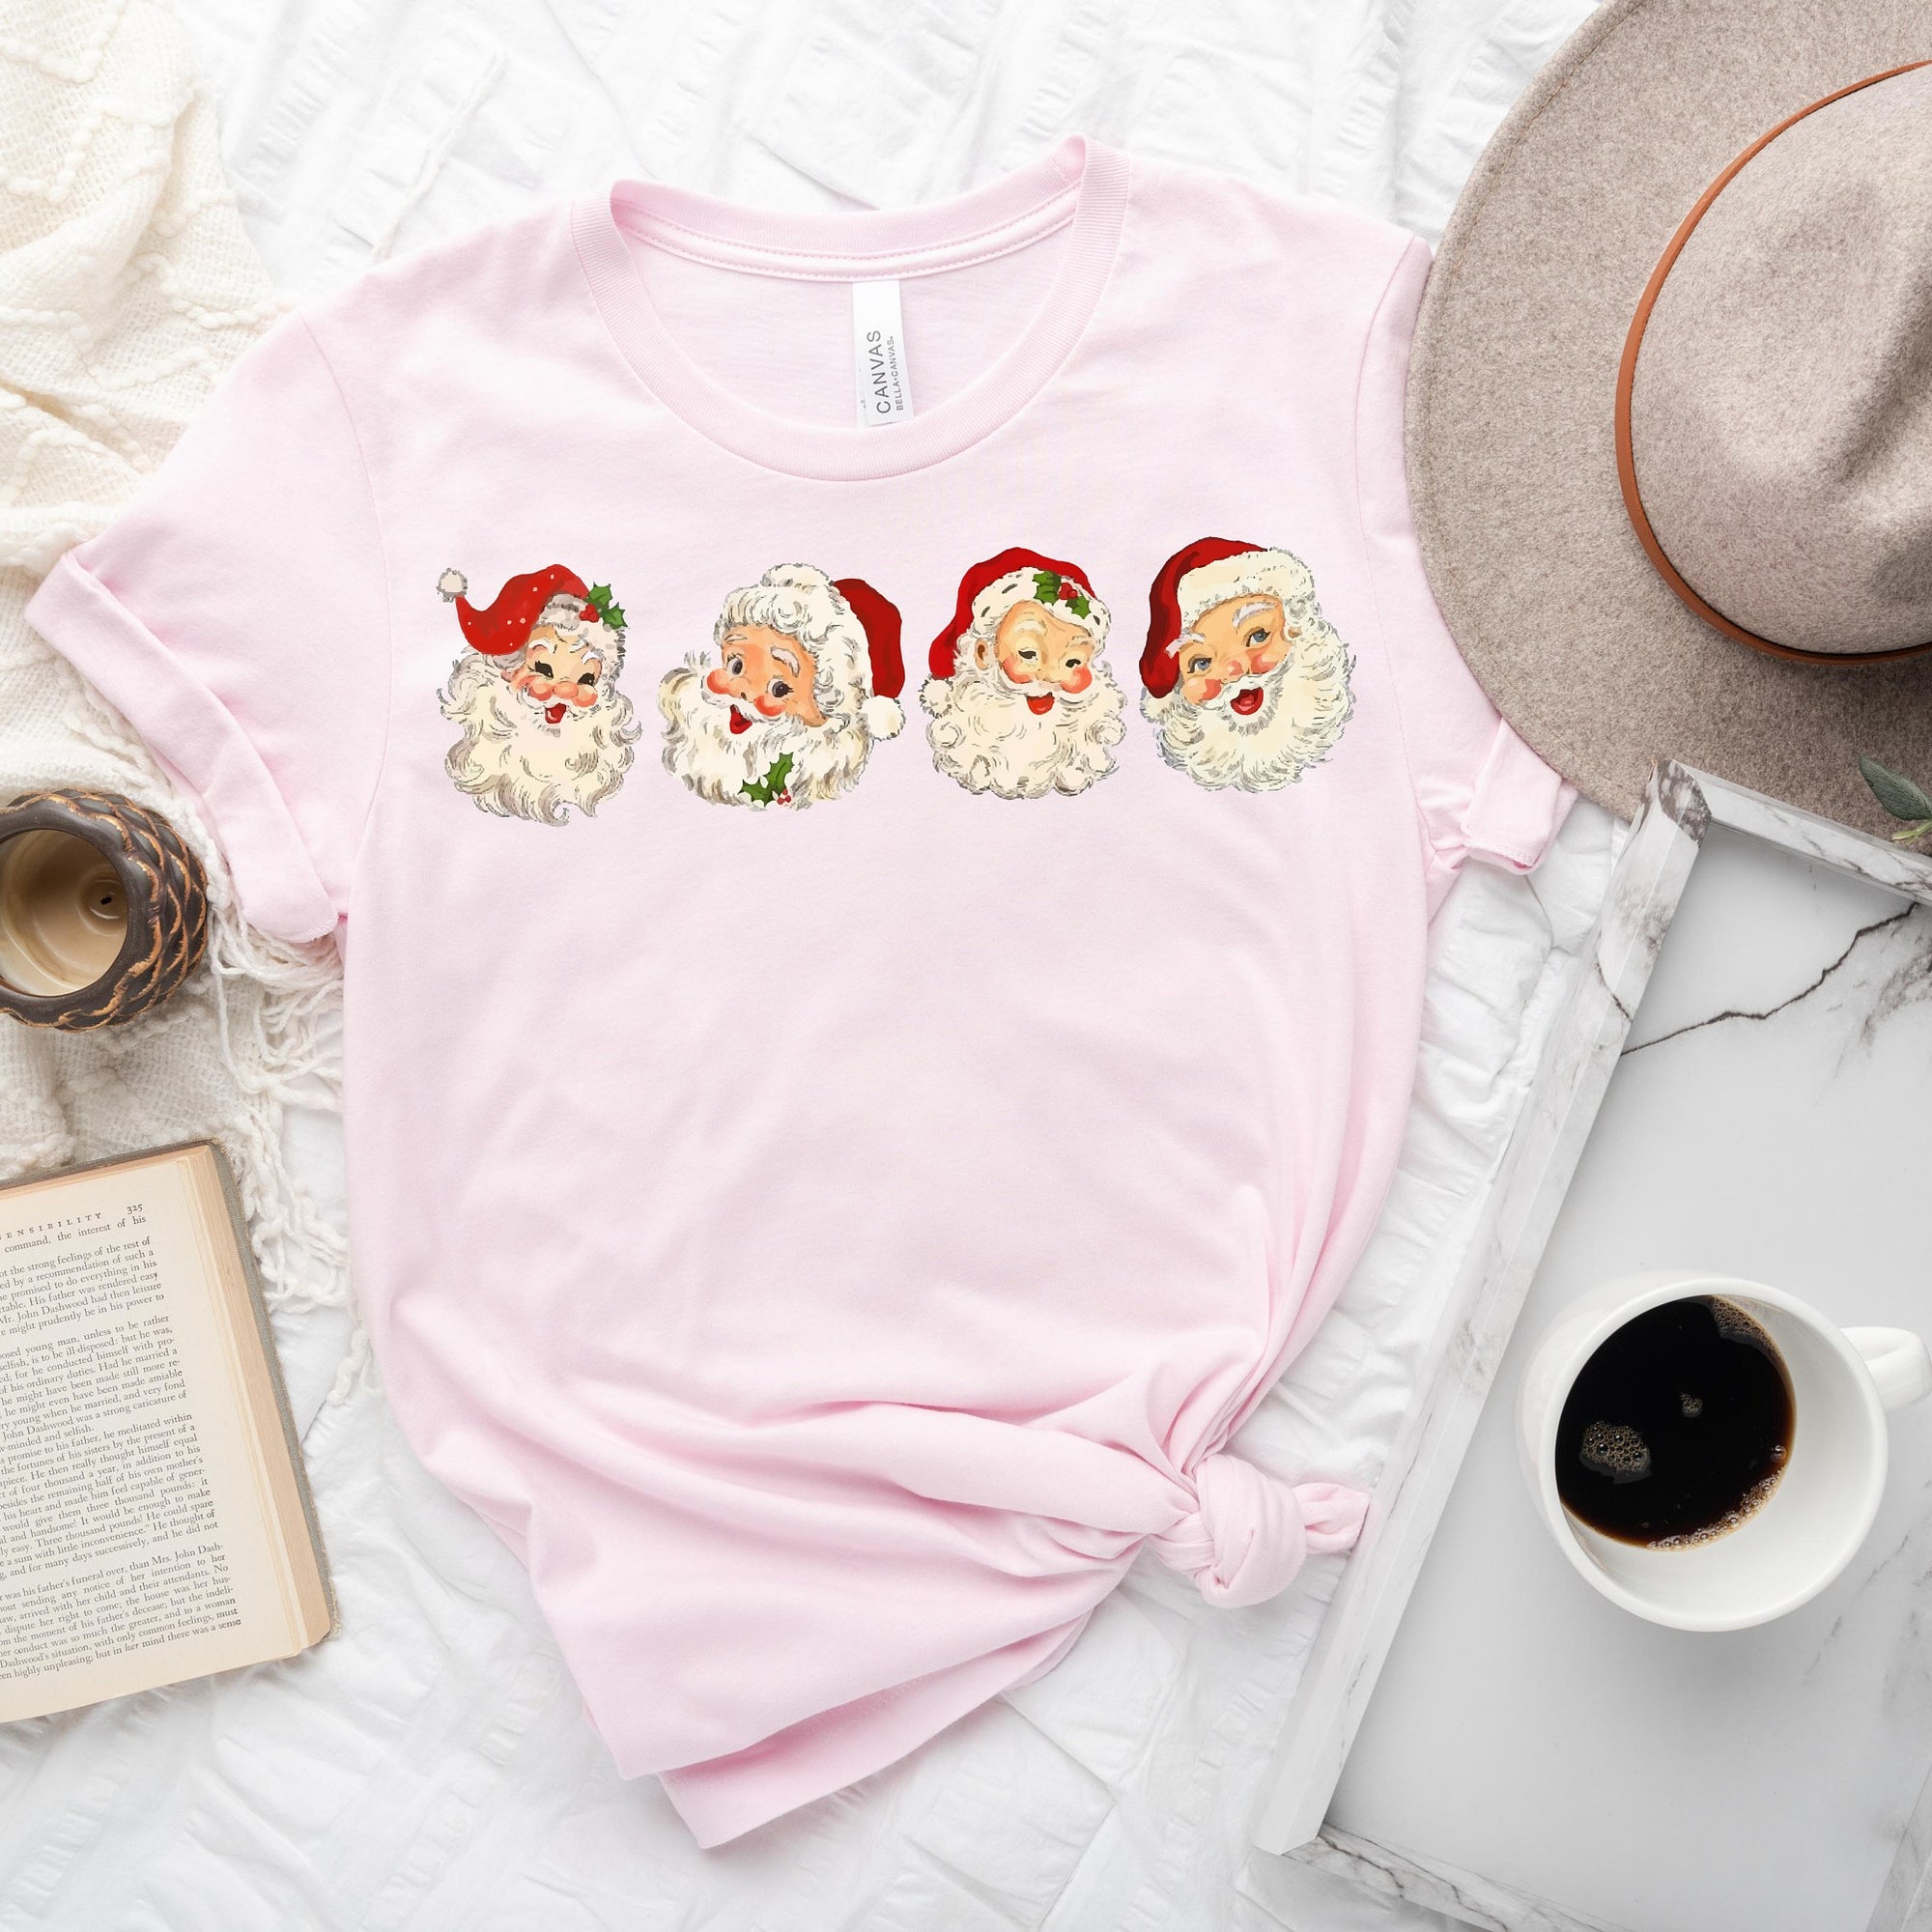 Retro Cheerful Santa Tshirt, Santa Merry Christmas Shirt, Vintage Santa Claus Graphic Tee, Xmas Women Men Gift, Classic Christmas Sweatshirt